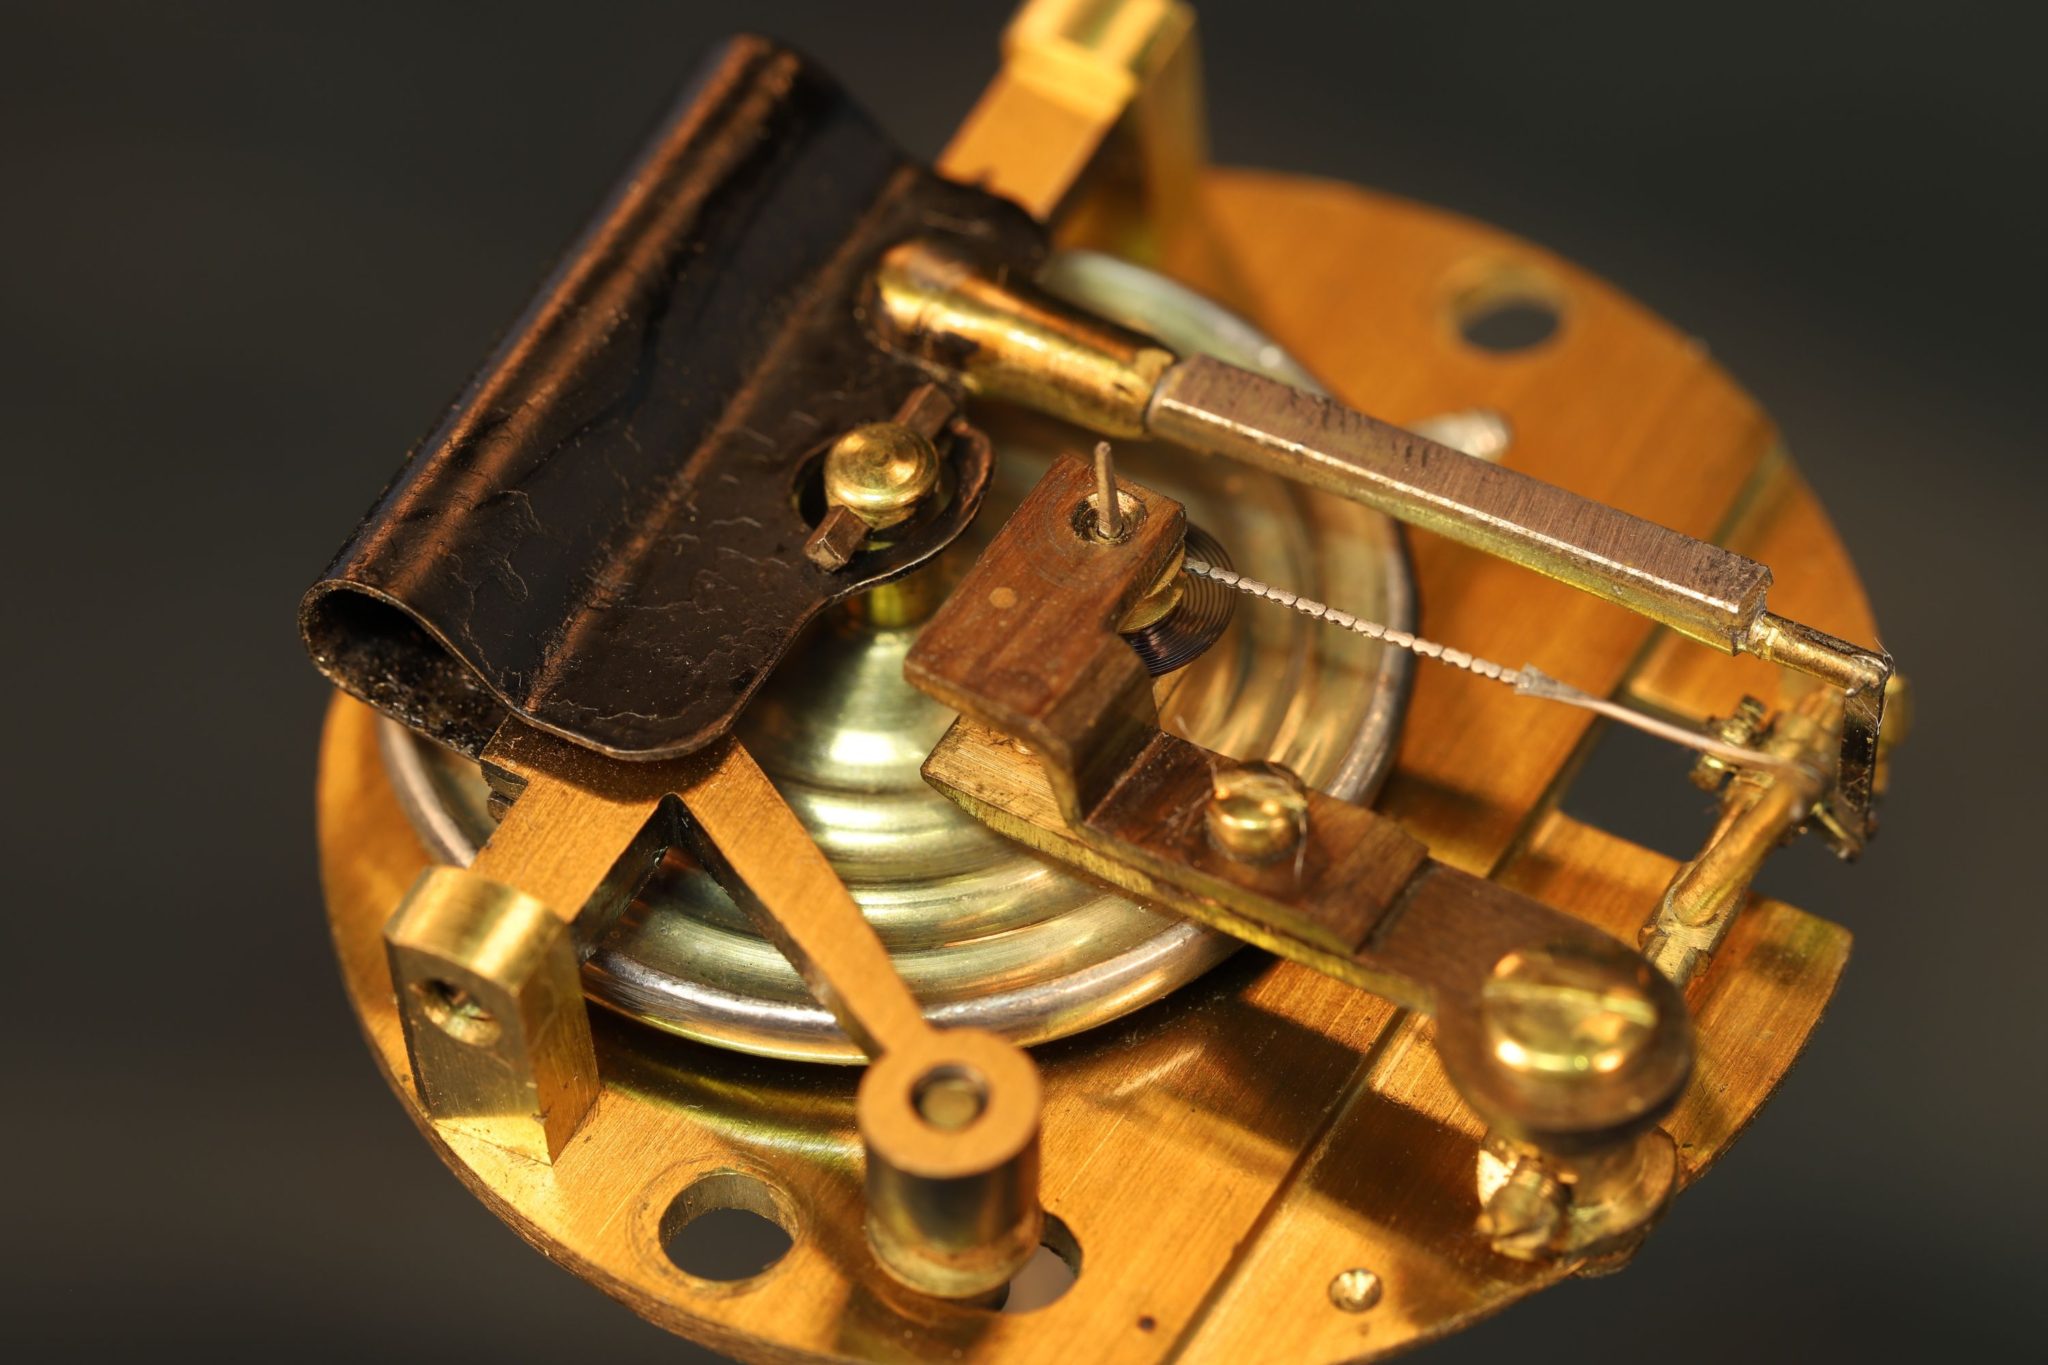 Image of Elliott Brothers Antique Pocket Barometer No 2184